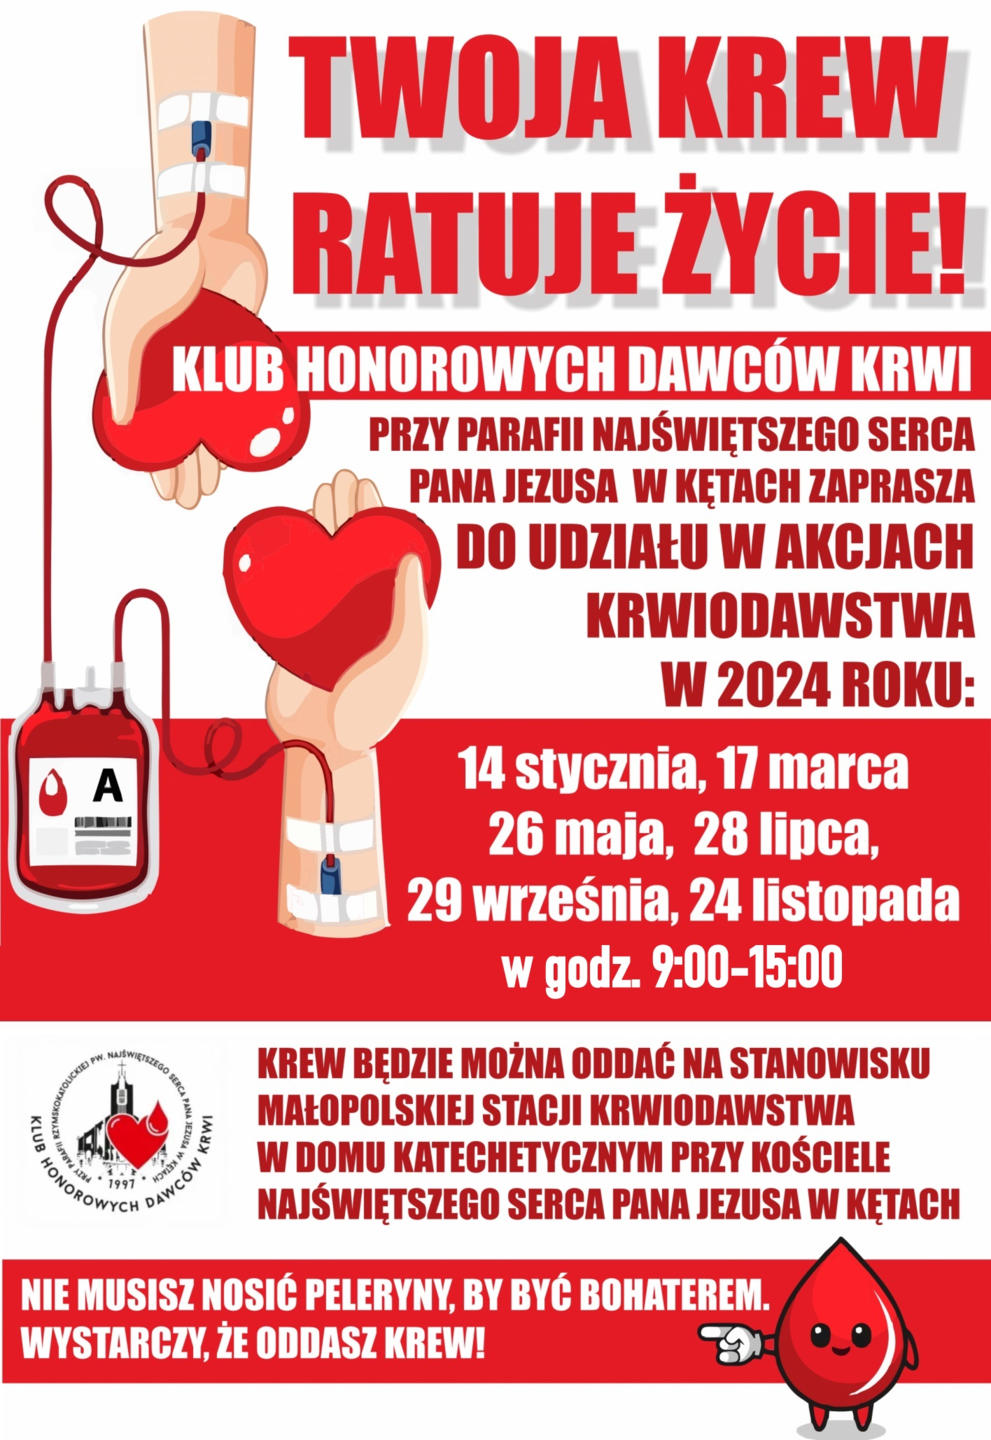 Klub Honorowych Dawców Krwi (HDK) w Kętach zaprasza 28 lipca na zbiórkę krwi w godz. 9 - 15. Oddaj krew, uratuj życie.